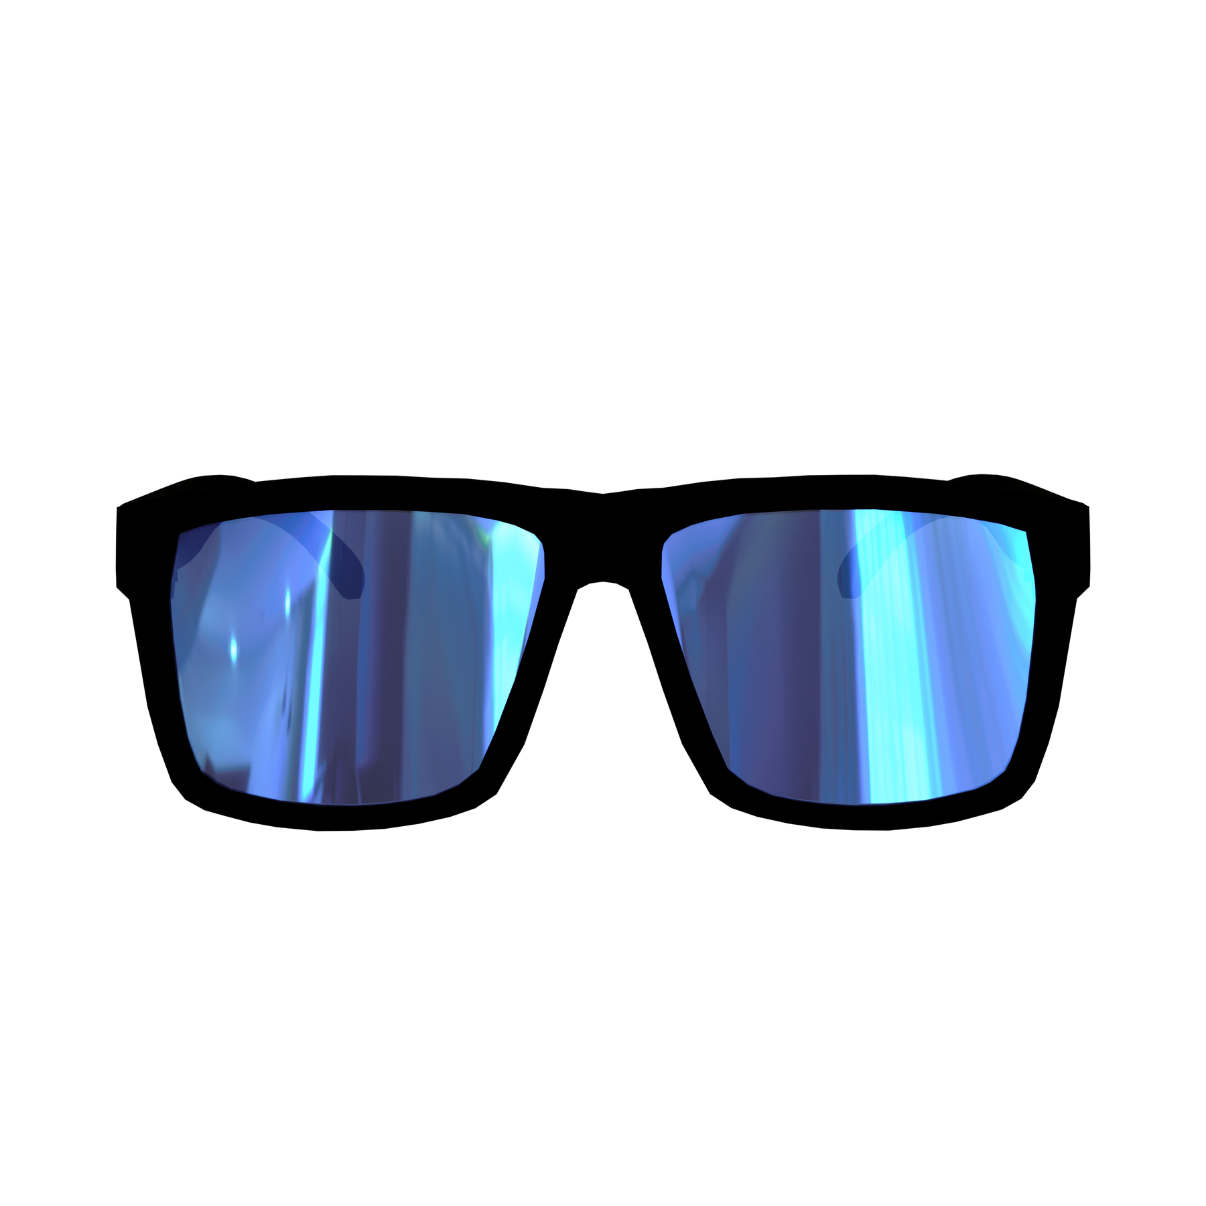 The Badger Z87 Sunglasses - Blue